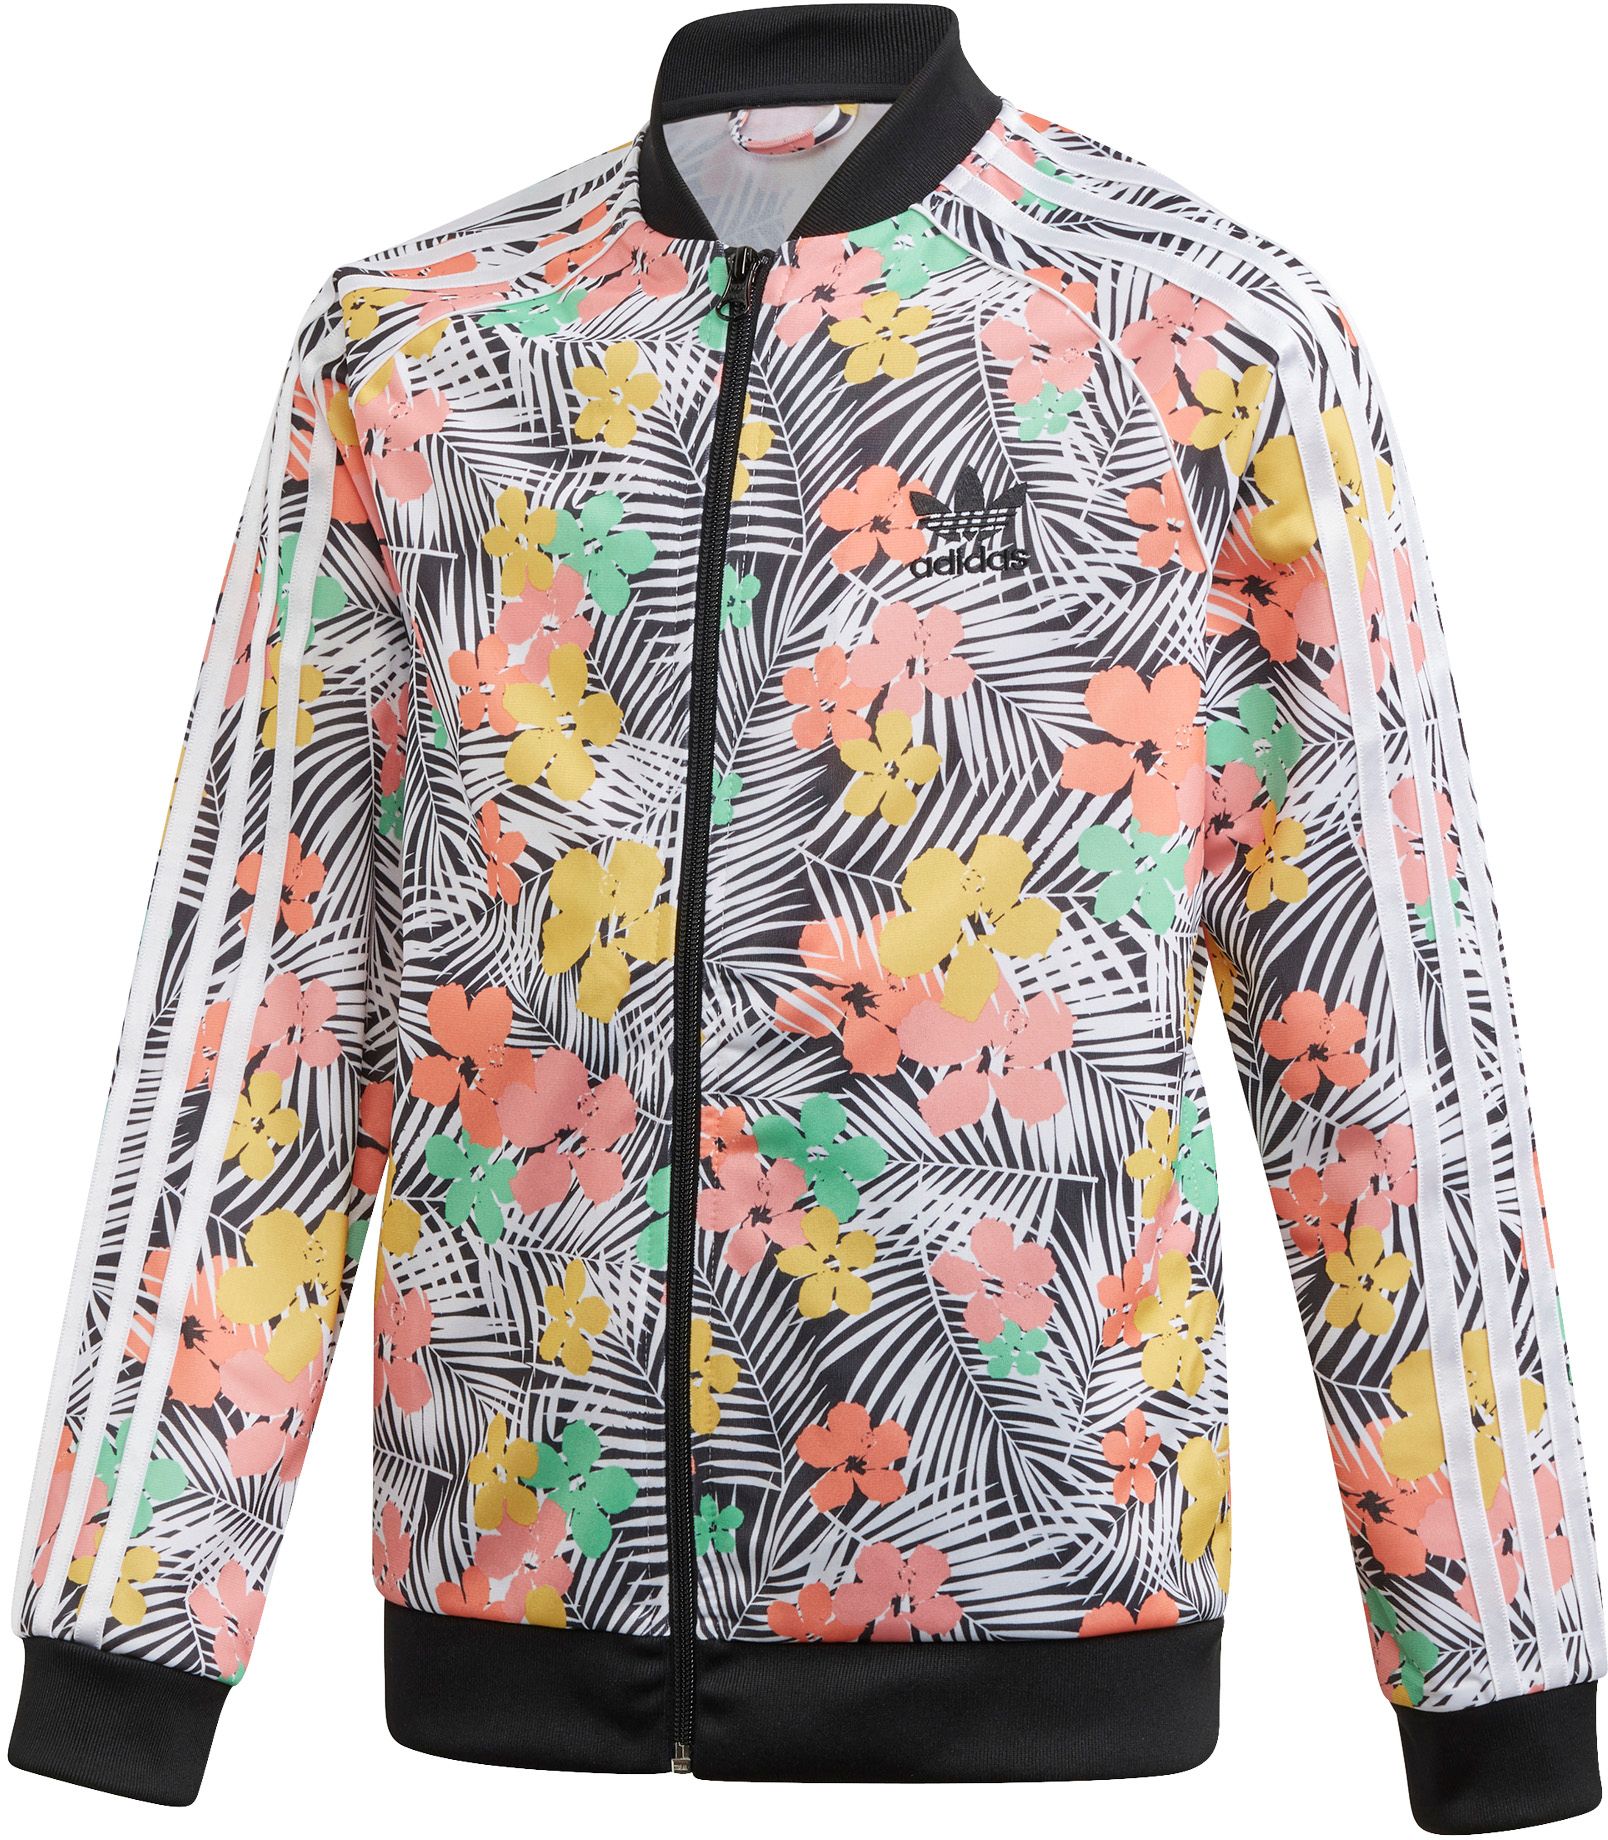 adidas patterned jacket